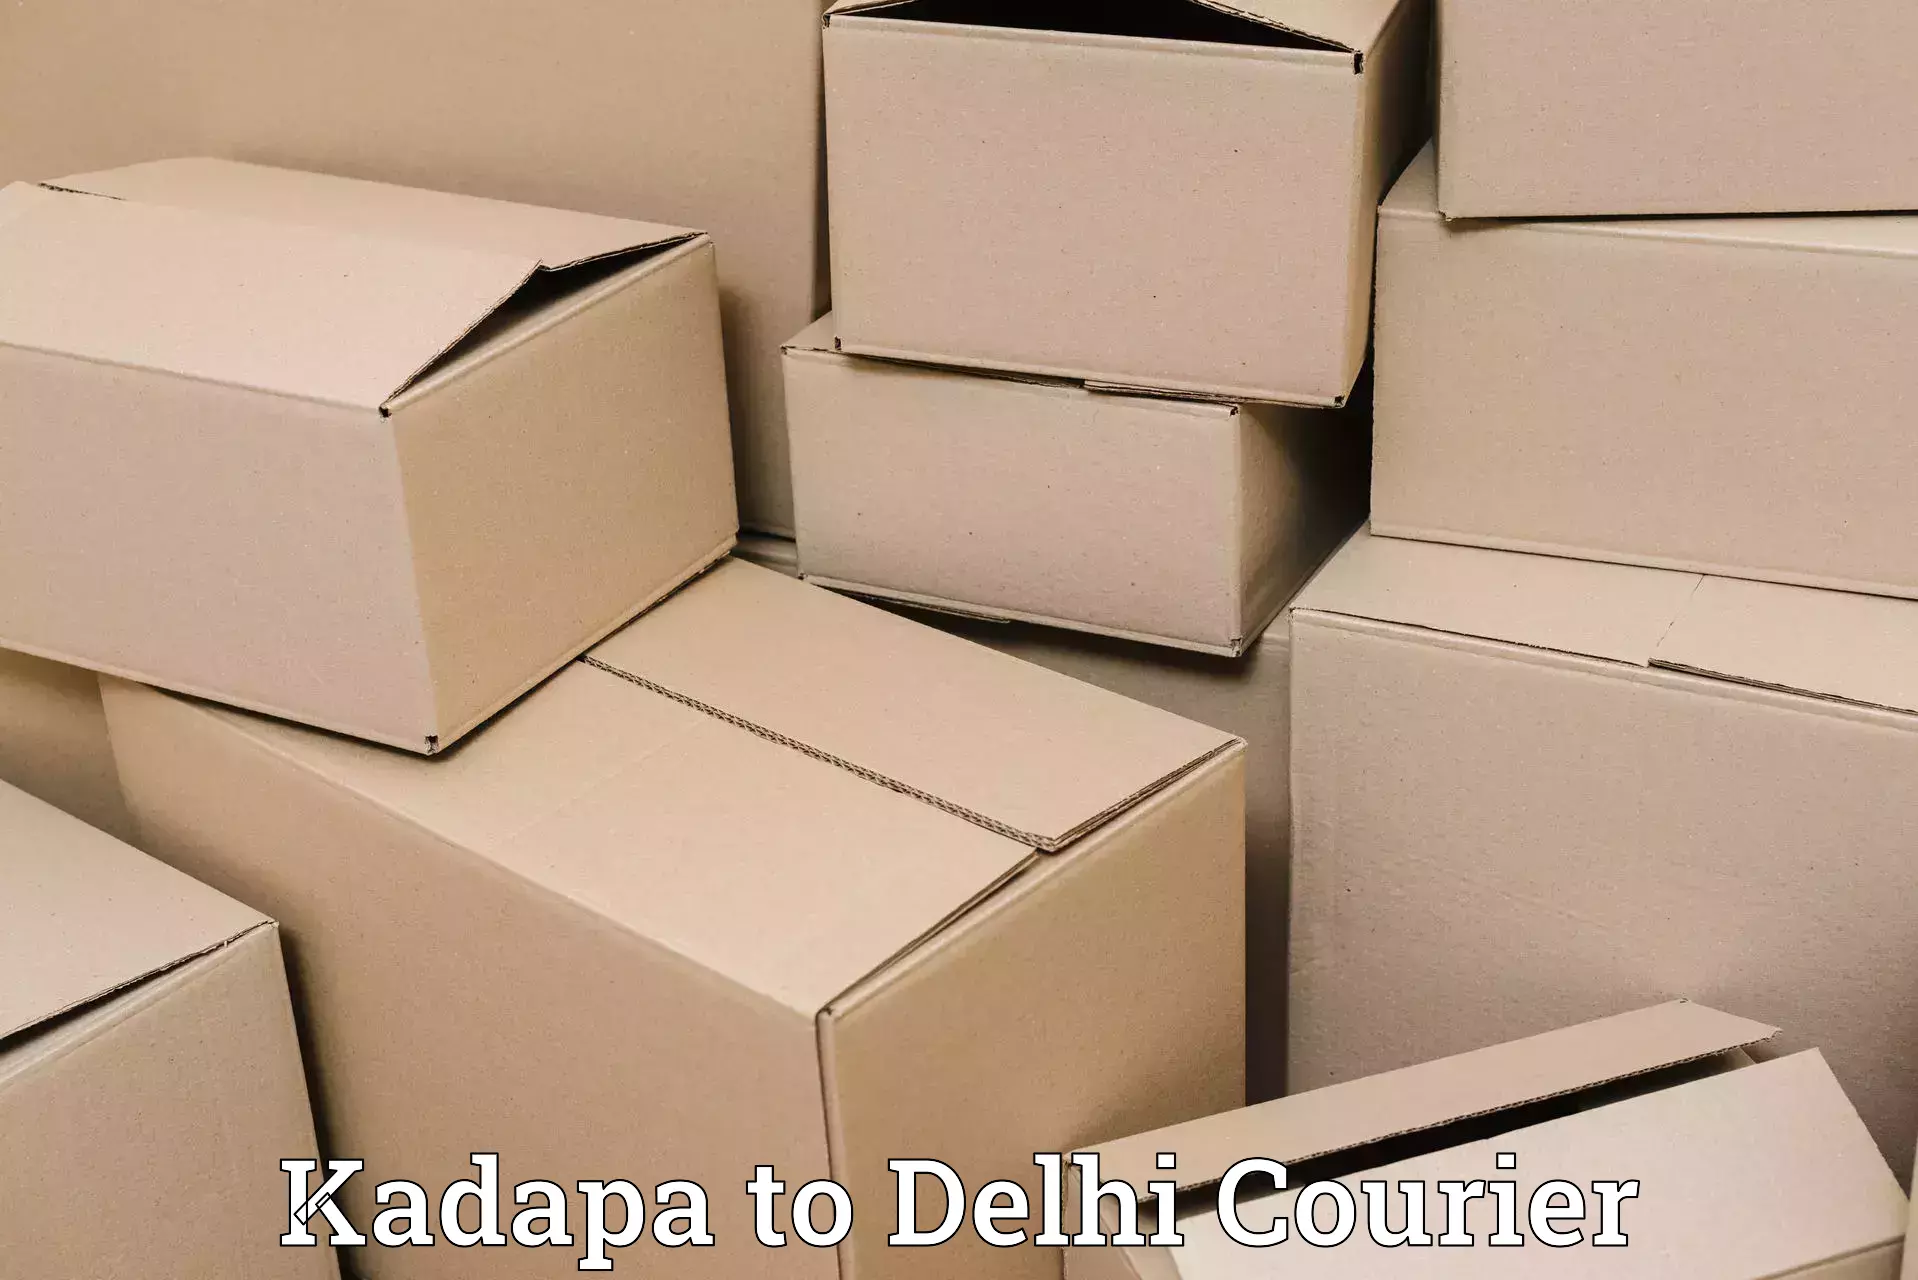 Small parcel delivery Kadapa to Jawaharlal Nehru University New Delhi